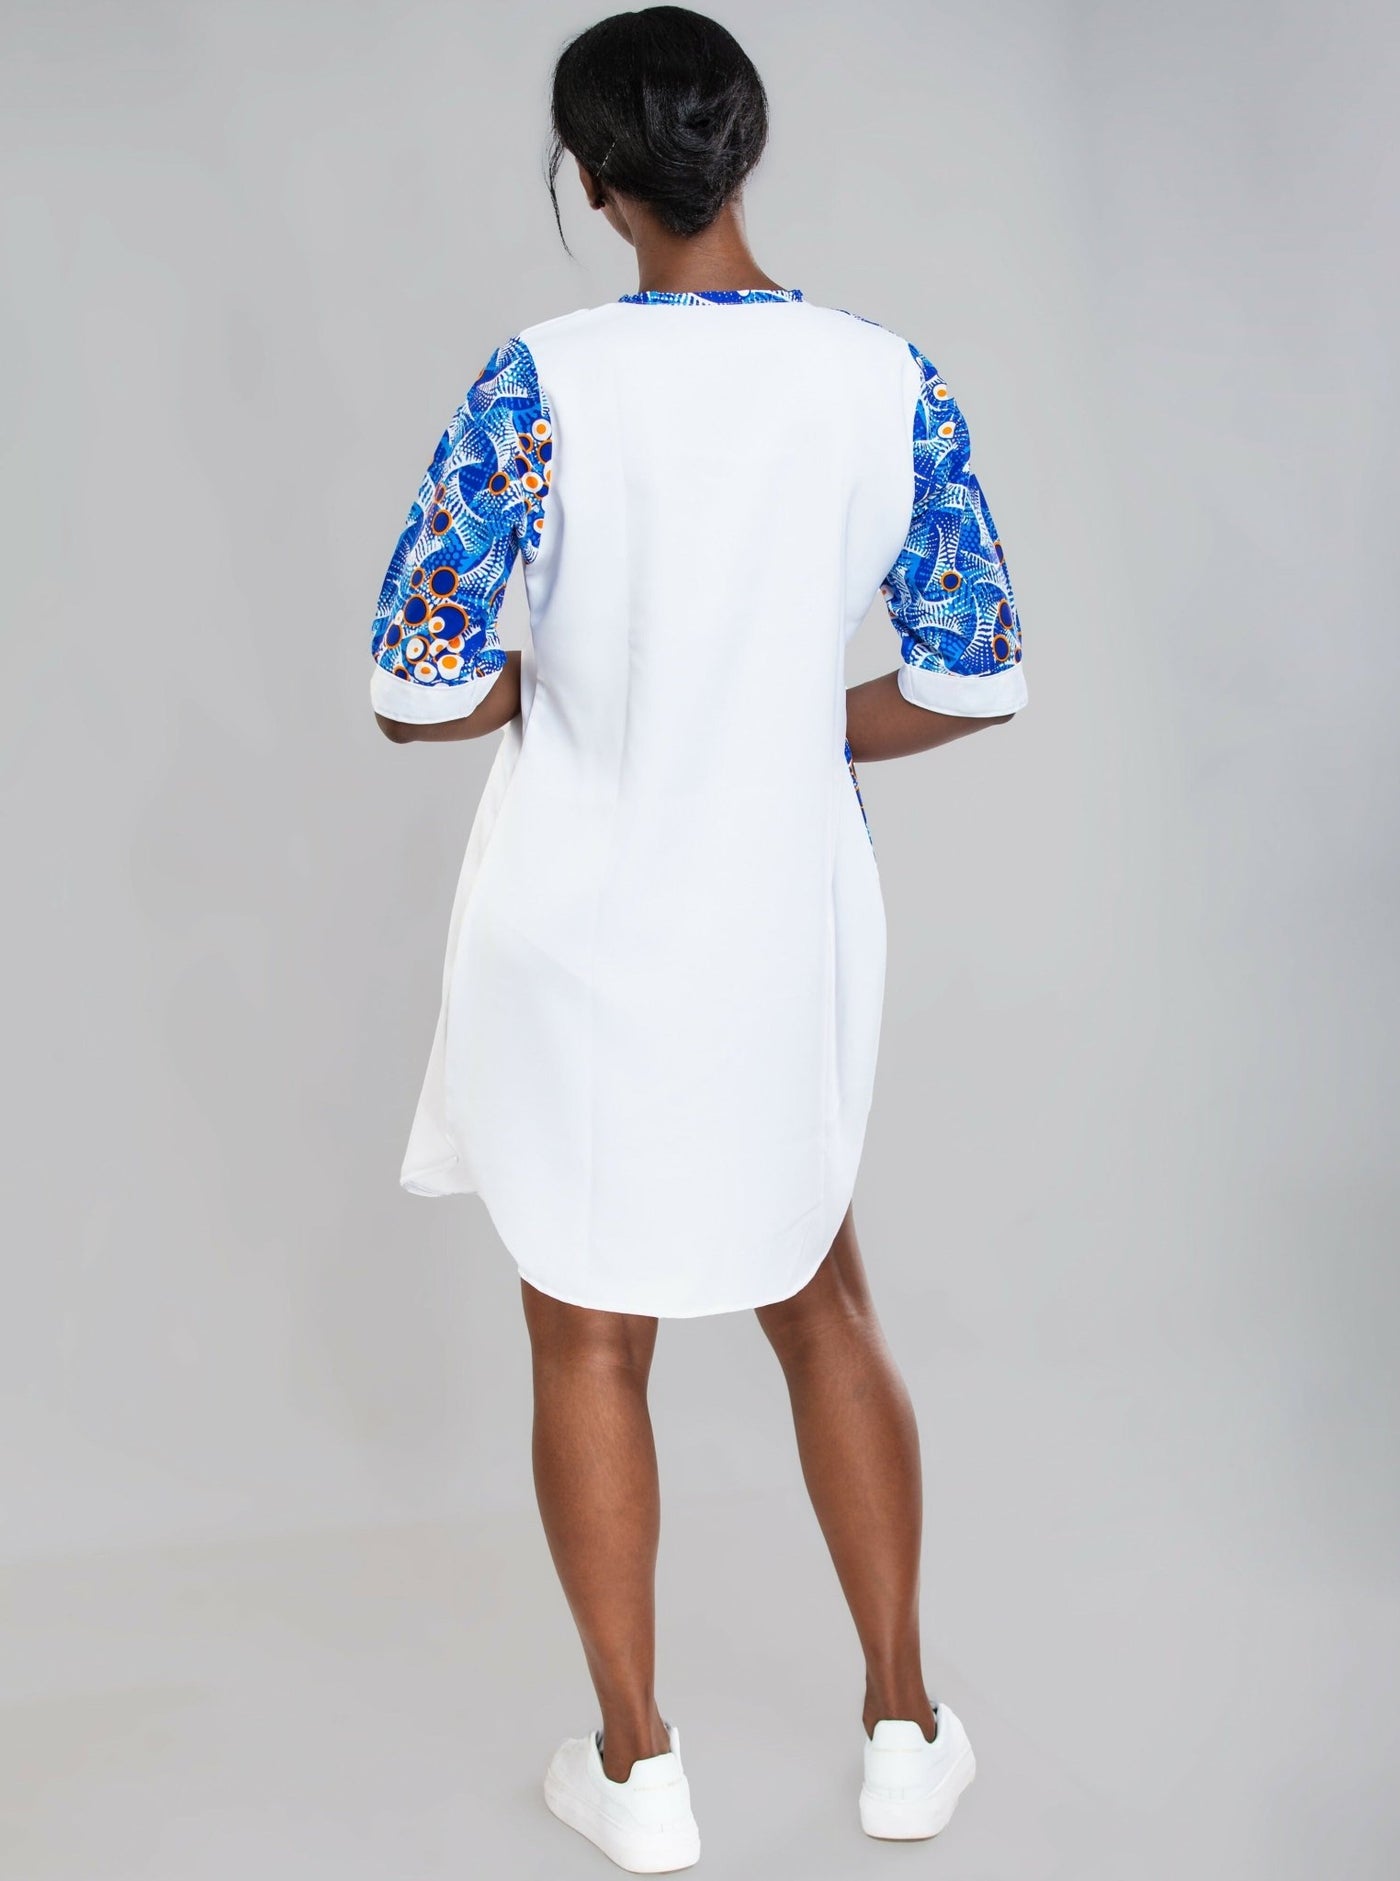 Da'joy Fashions Rochester Shirt Dress - White - Shopzetu